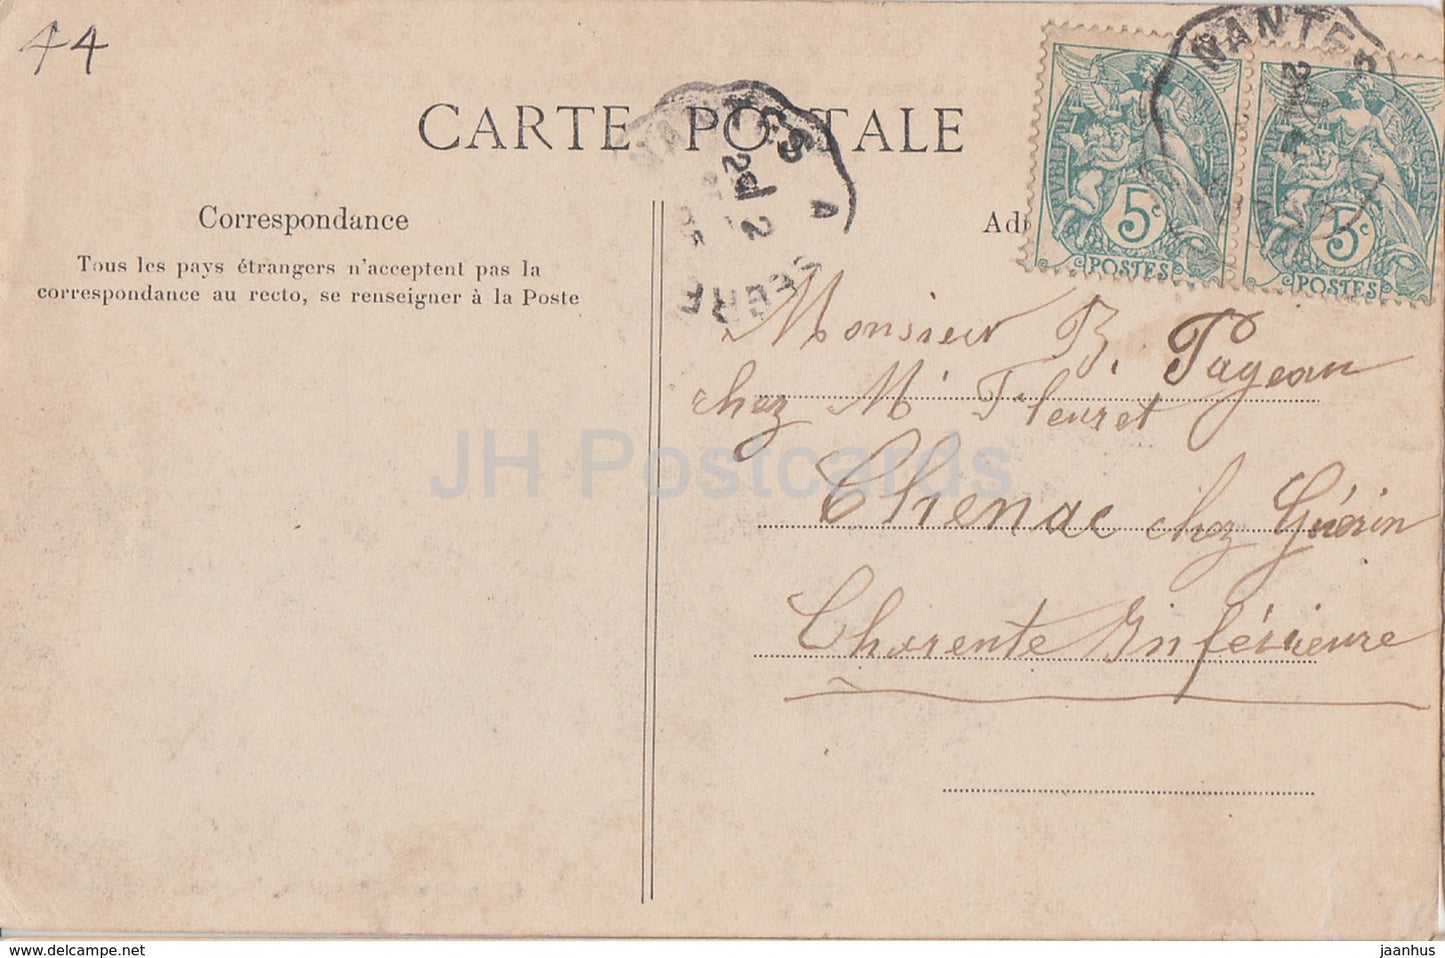 Le Cellier - Chateau de Clermont - castle - old postcard - 1905 - France - used